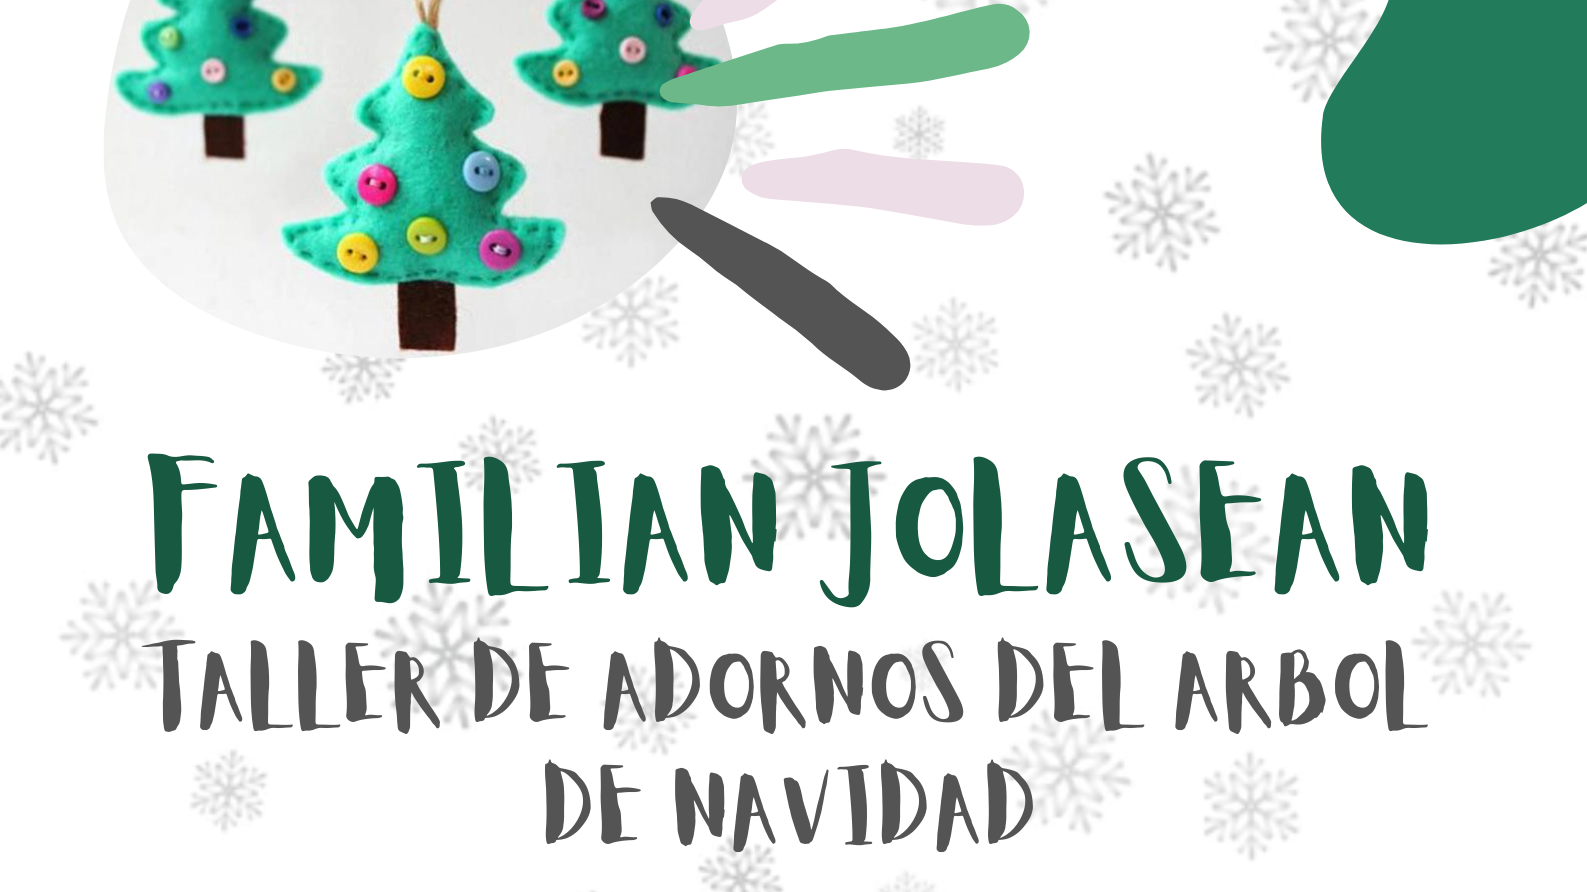 El programa Familian Jolasean organiza un taller para crear adornos navideños